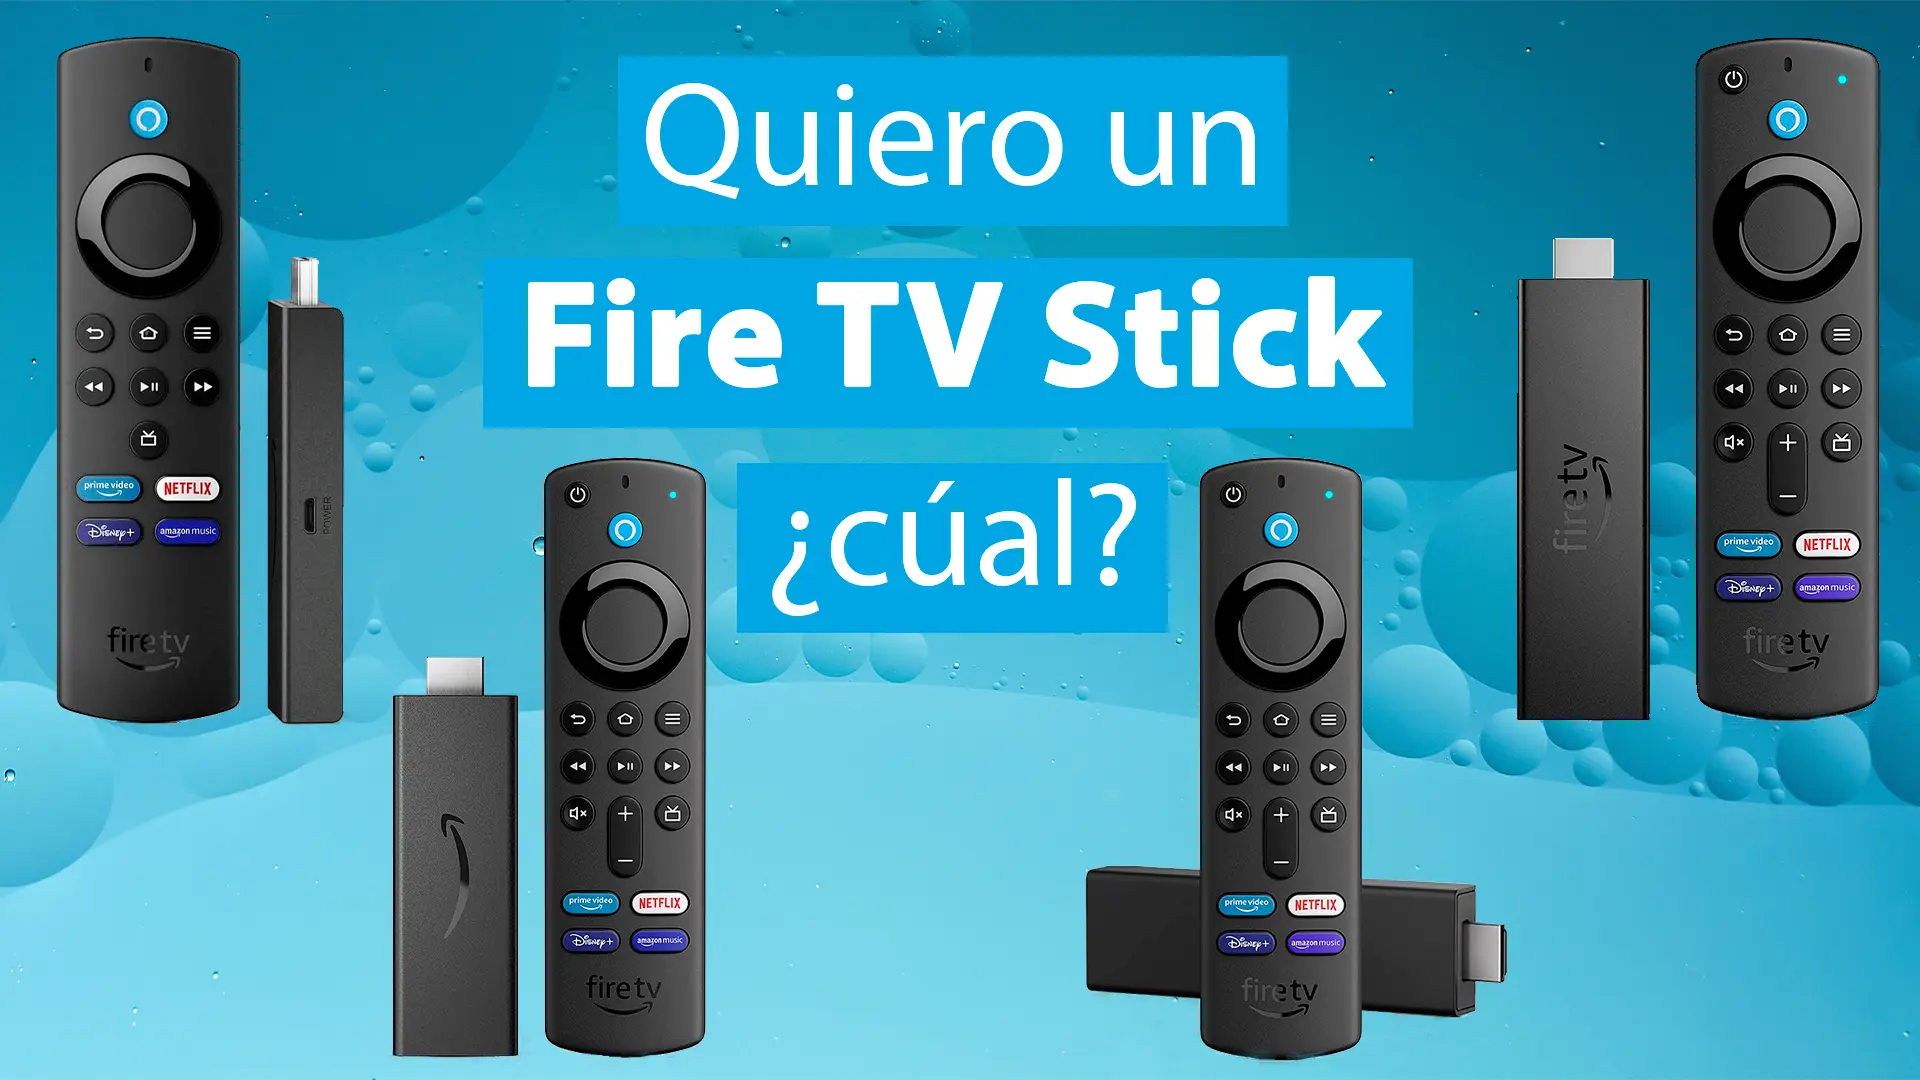 Me interesa un Amazon Fire TV Stick, pero no se cual